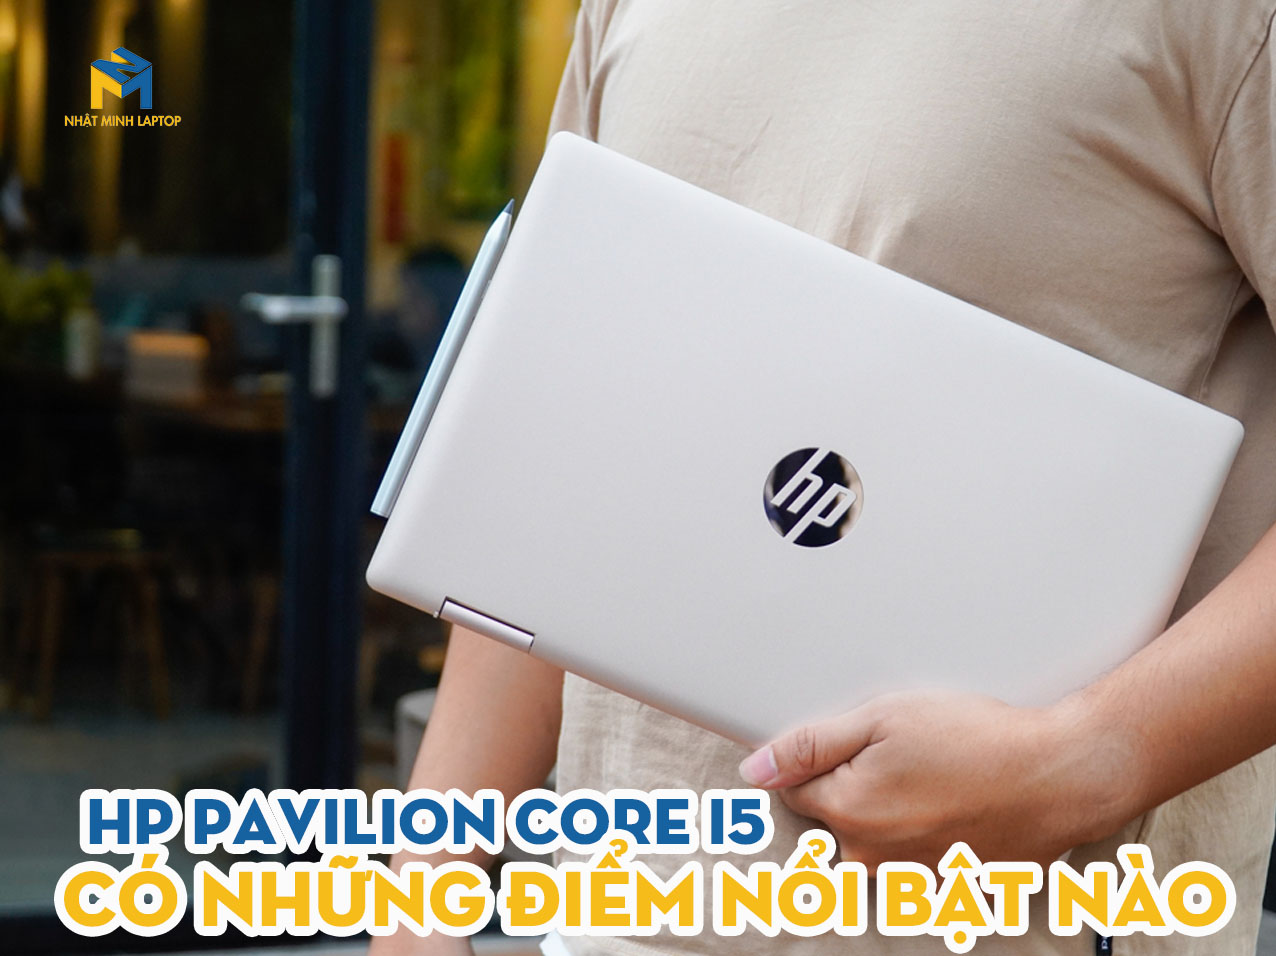 Laptop HP Pavilion Core i5 sở hữu đặc điểm nổi bật nào?